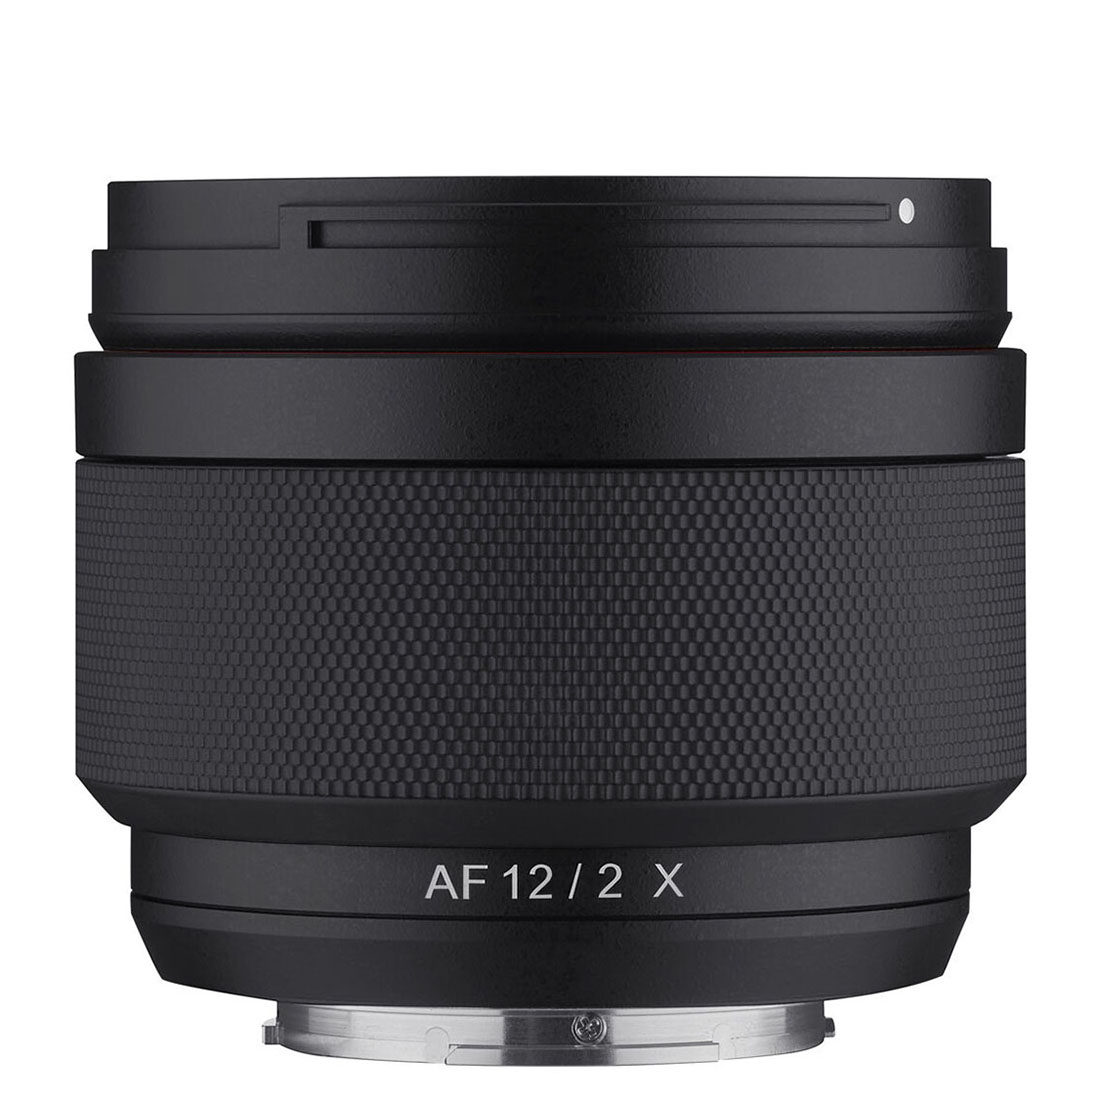 ống kính máy ảnh hiệu Samyang AF 12mm F2.0 cho Fuji X/ Sony E - HÀNG CHÍNH HÃNG